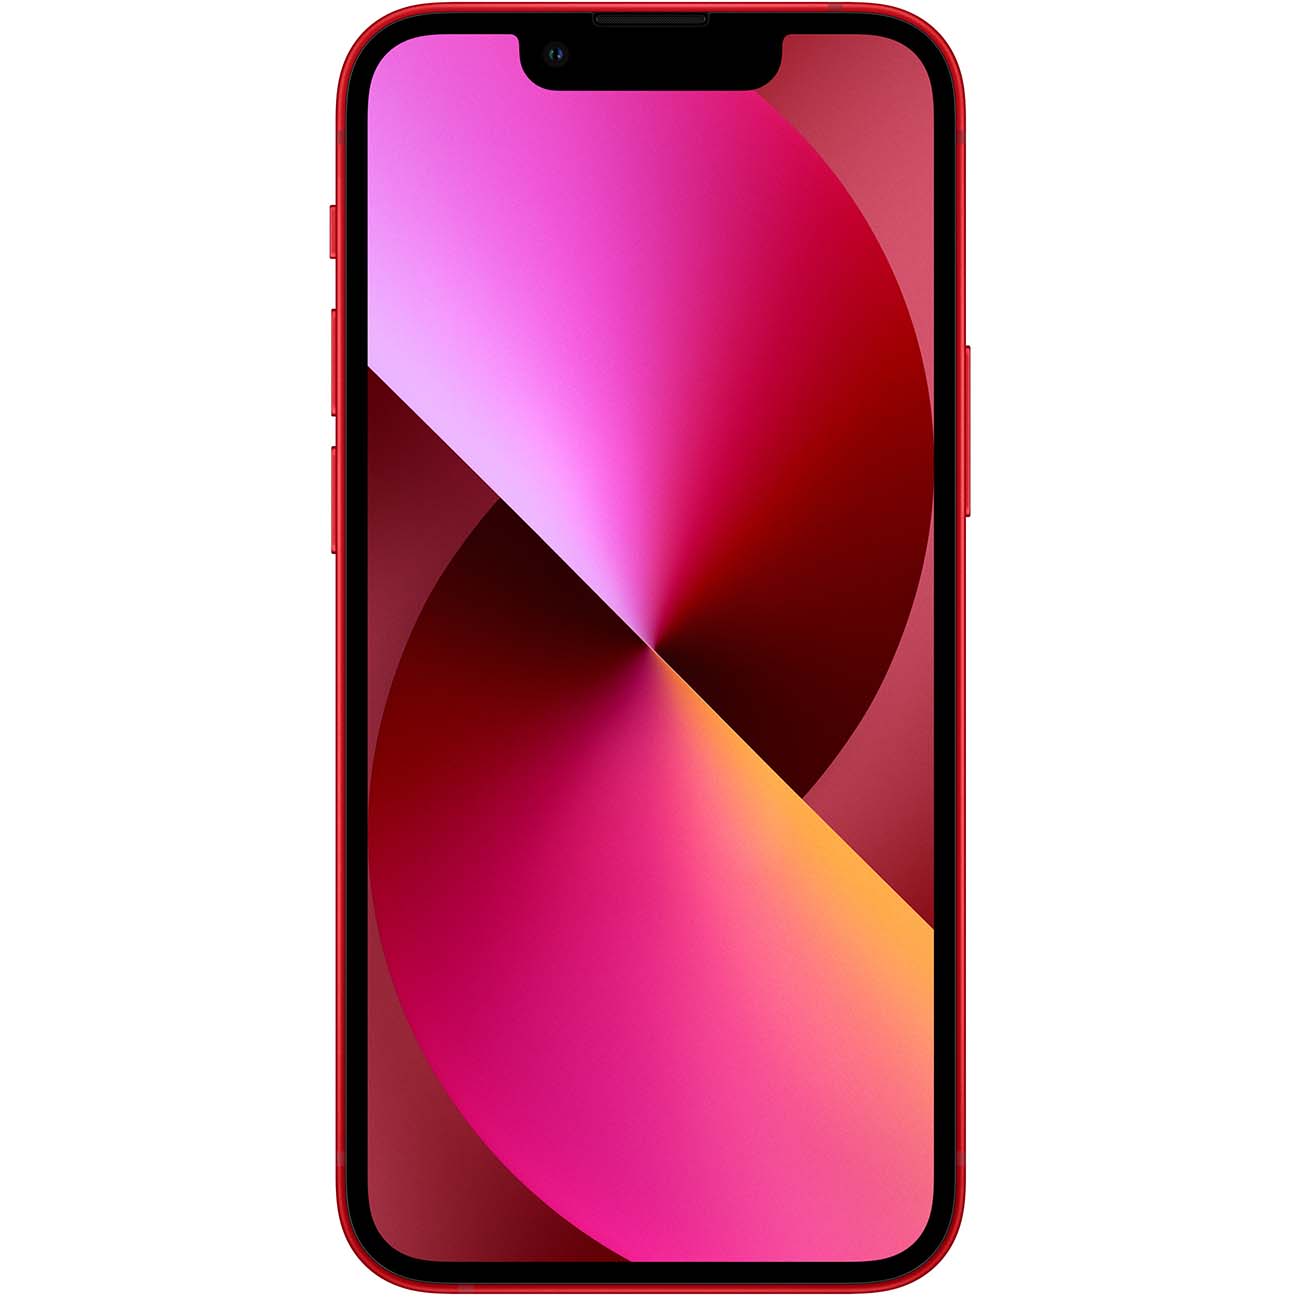 Купить смартфон apple iphone 13 mini 128gb (product) red Apple iPhone 13 mini в официальном магазине Apple, Samsung, Xiaomi. iPixel.ru Купить, заказ, кредит, рассрочка, отзывы,  характеристики, цена,  фотографии, в подарок.